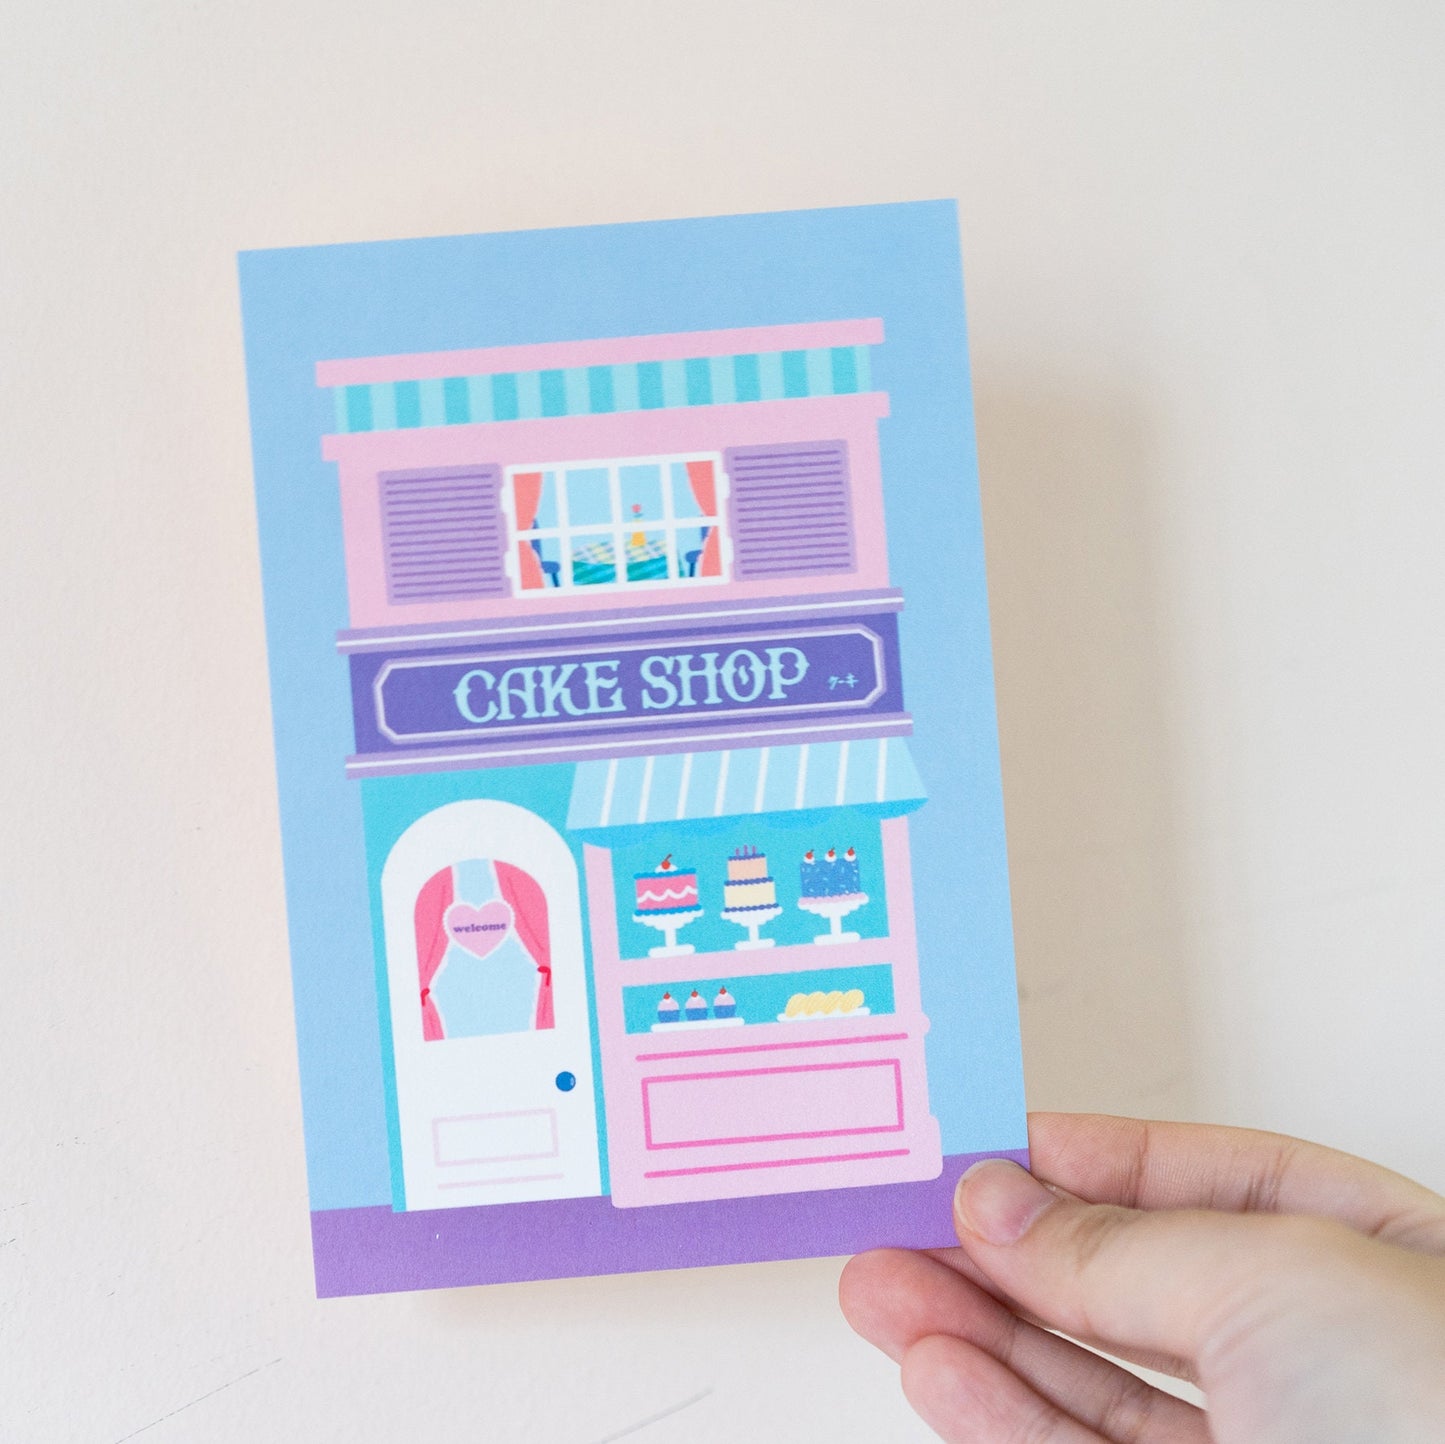 Cake Shop Postcard / Print